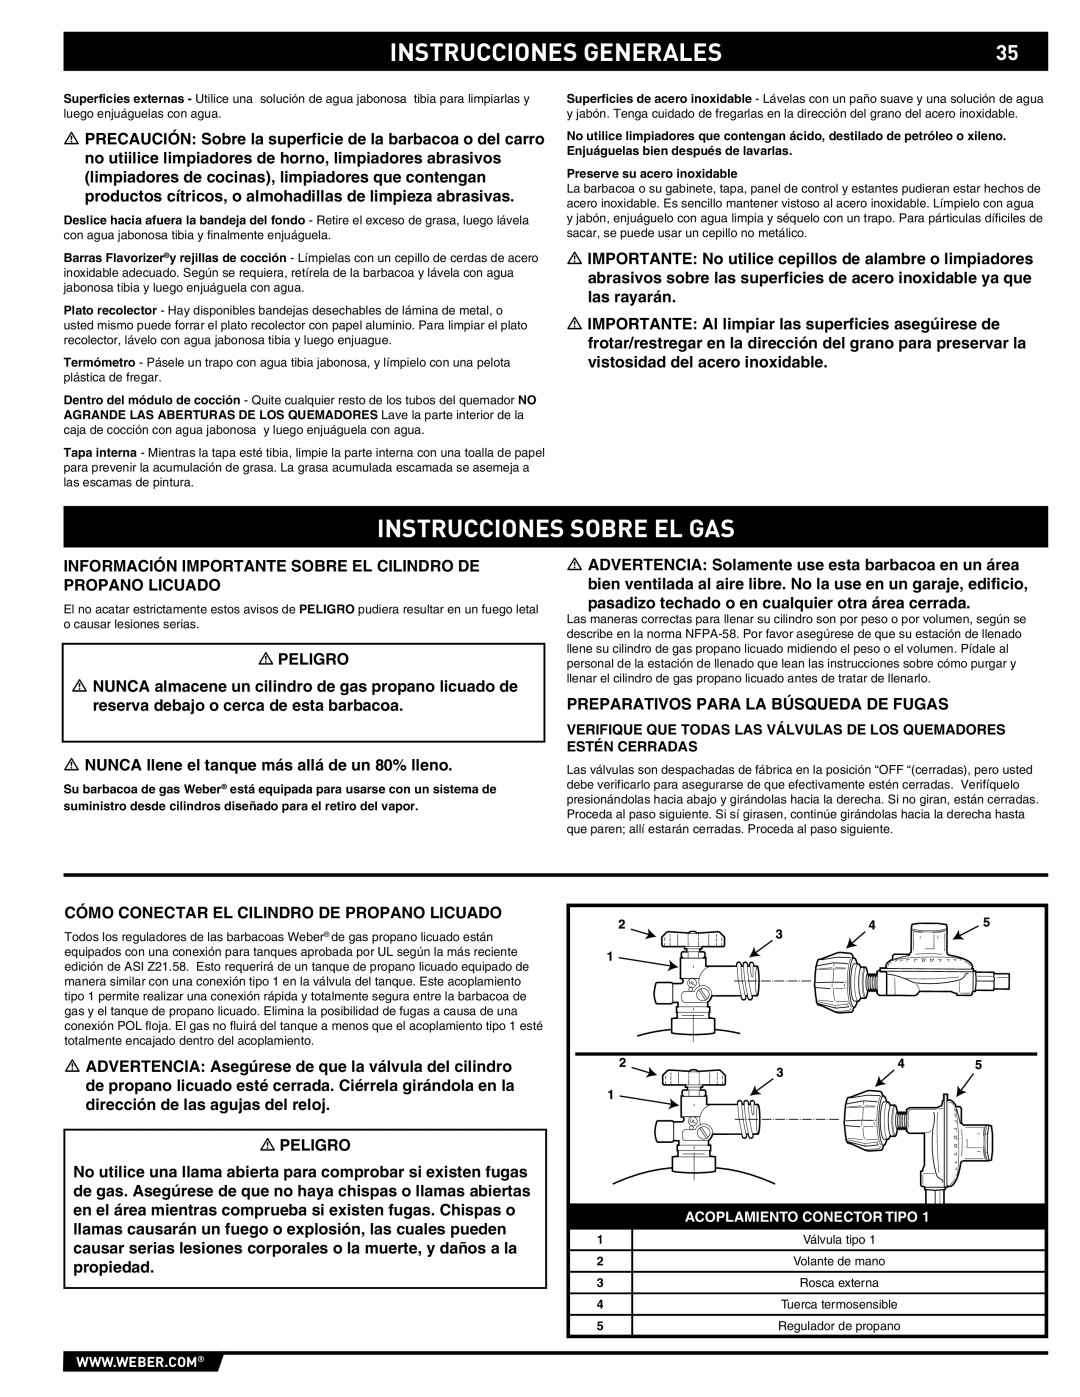 Summit 89190 manual Instrucciones Sobre El Gas, Instrucciones Generales, Acoplamiento Conector Tipo 